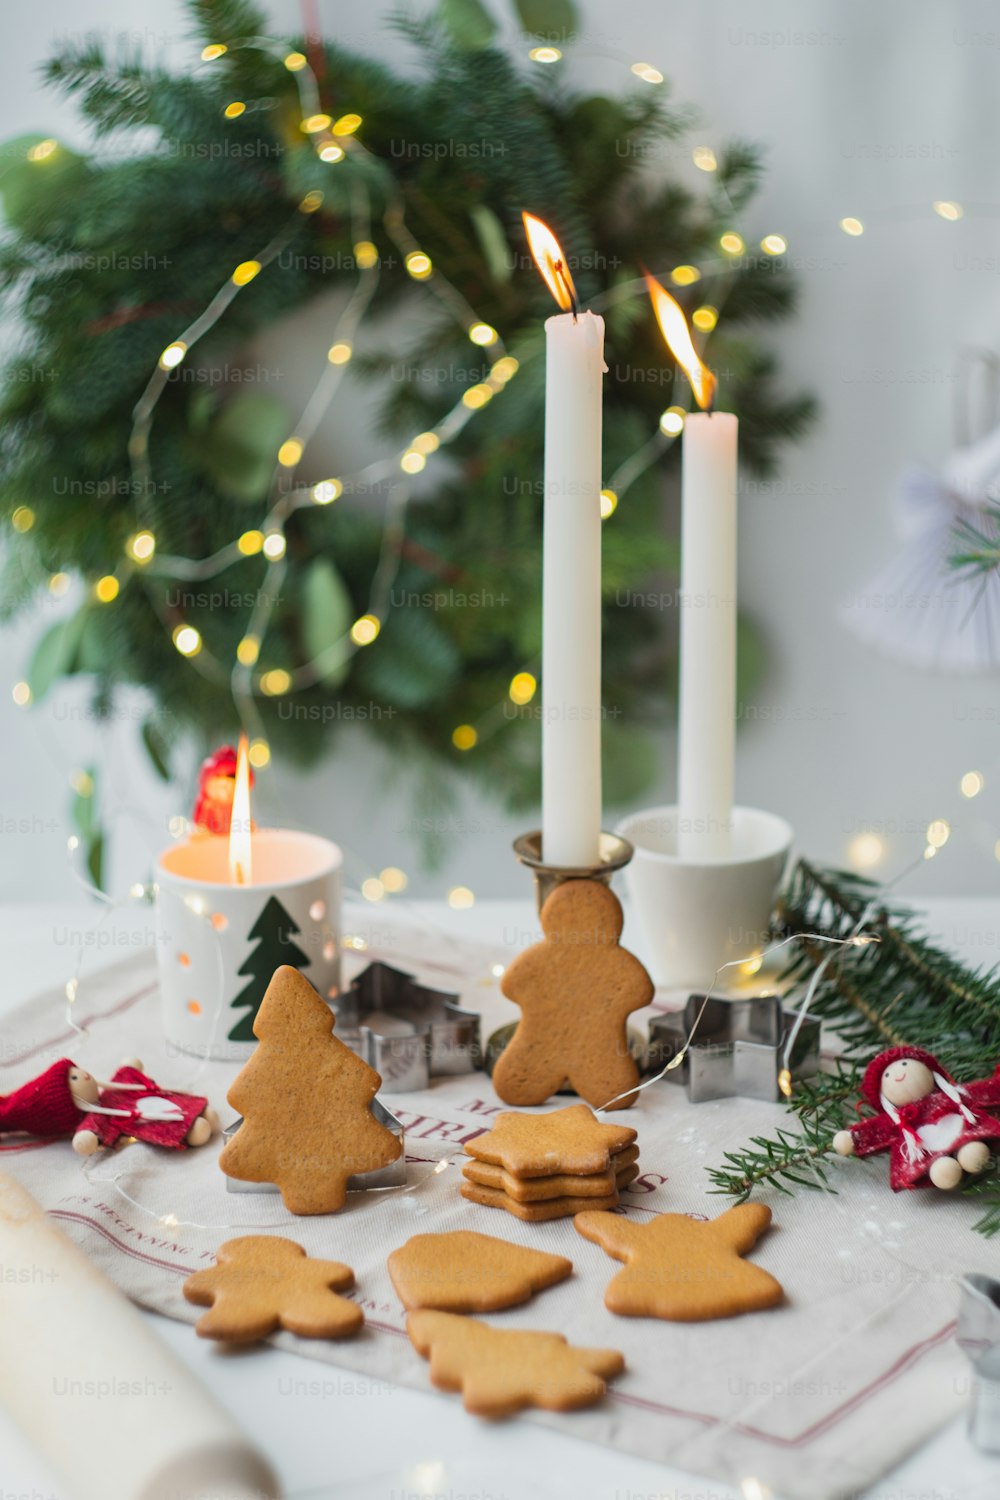 una mesa cubierta con muchas galletas junto a una vela encendida